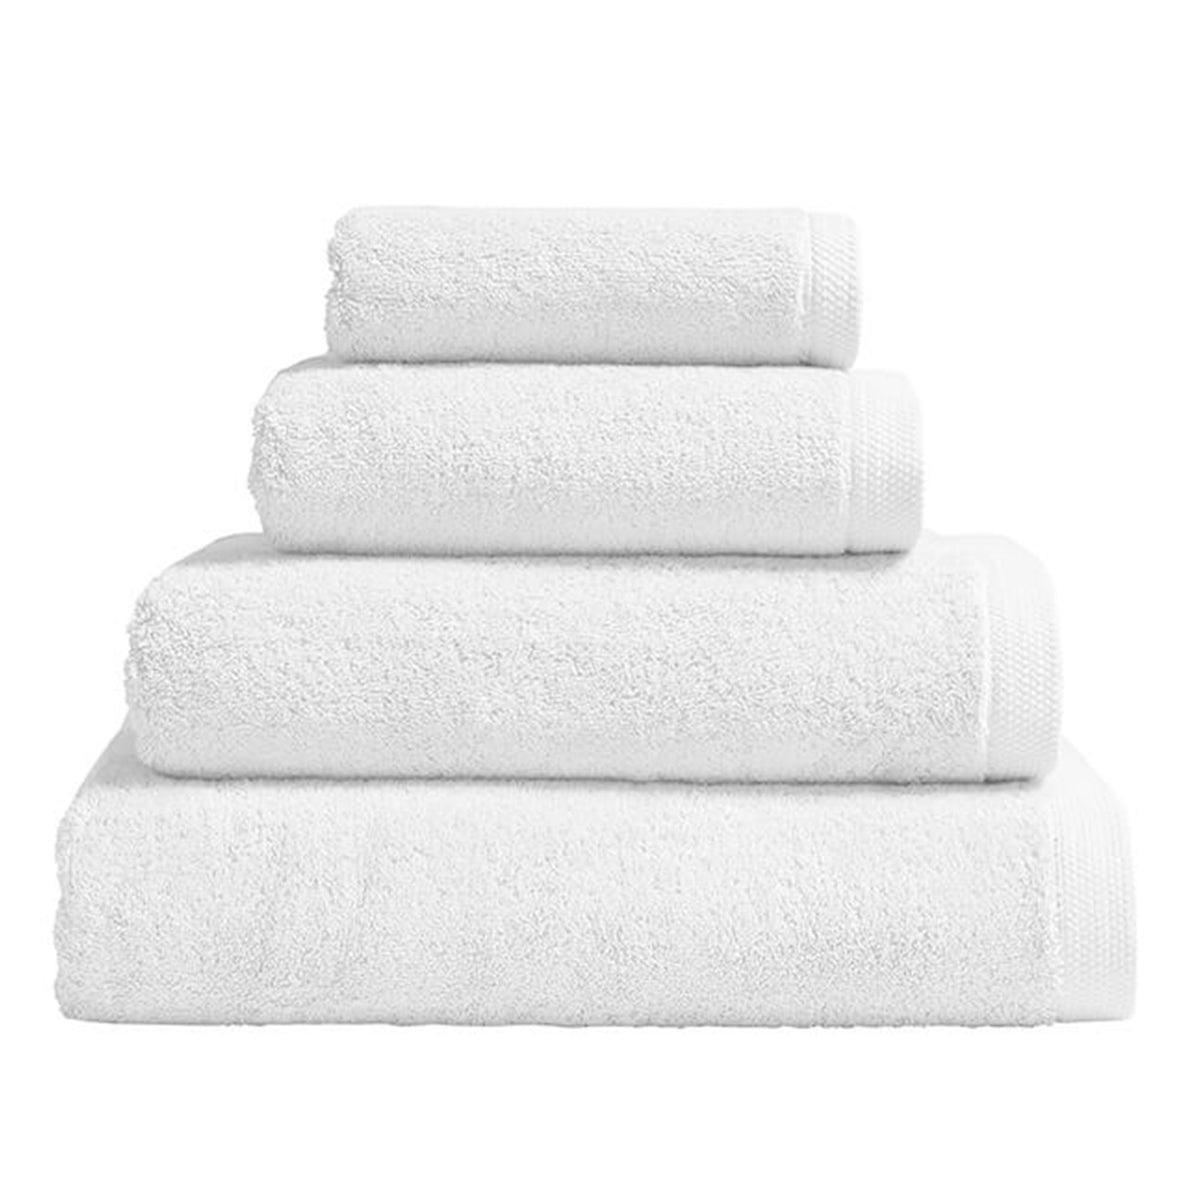 Essentiel White Bath Towels by Alexandre Turpault | Fig Linens 